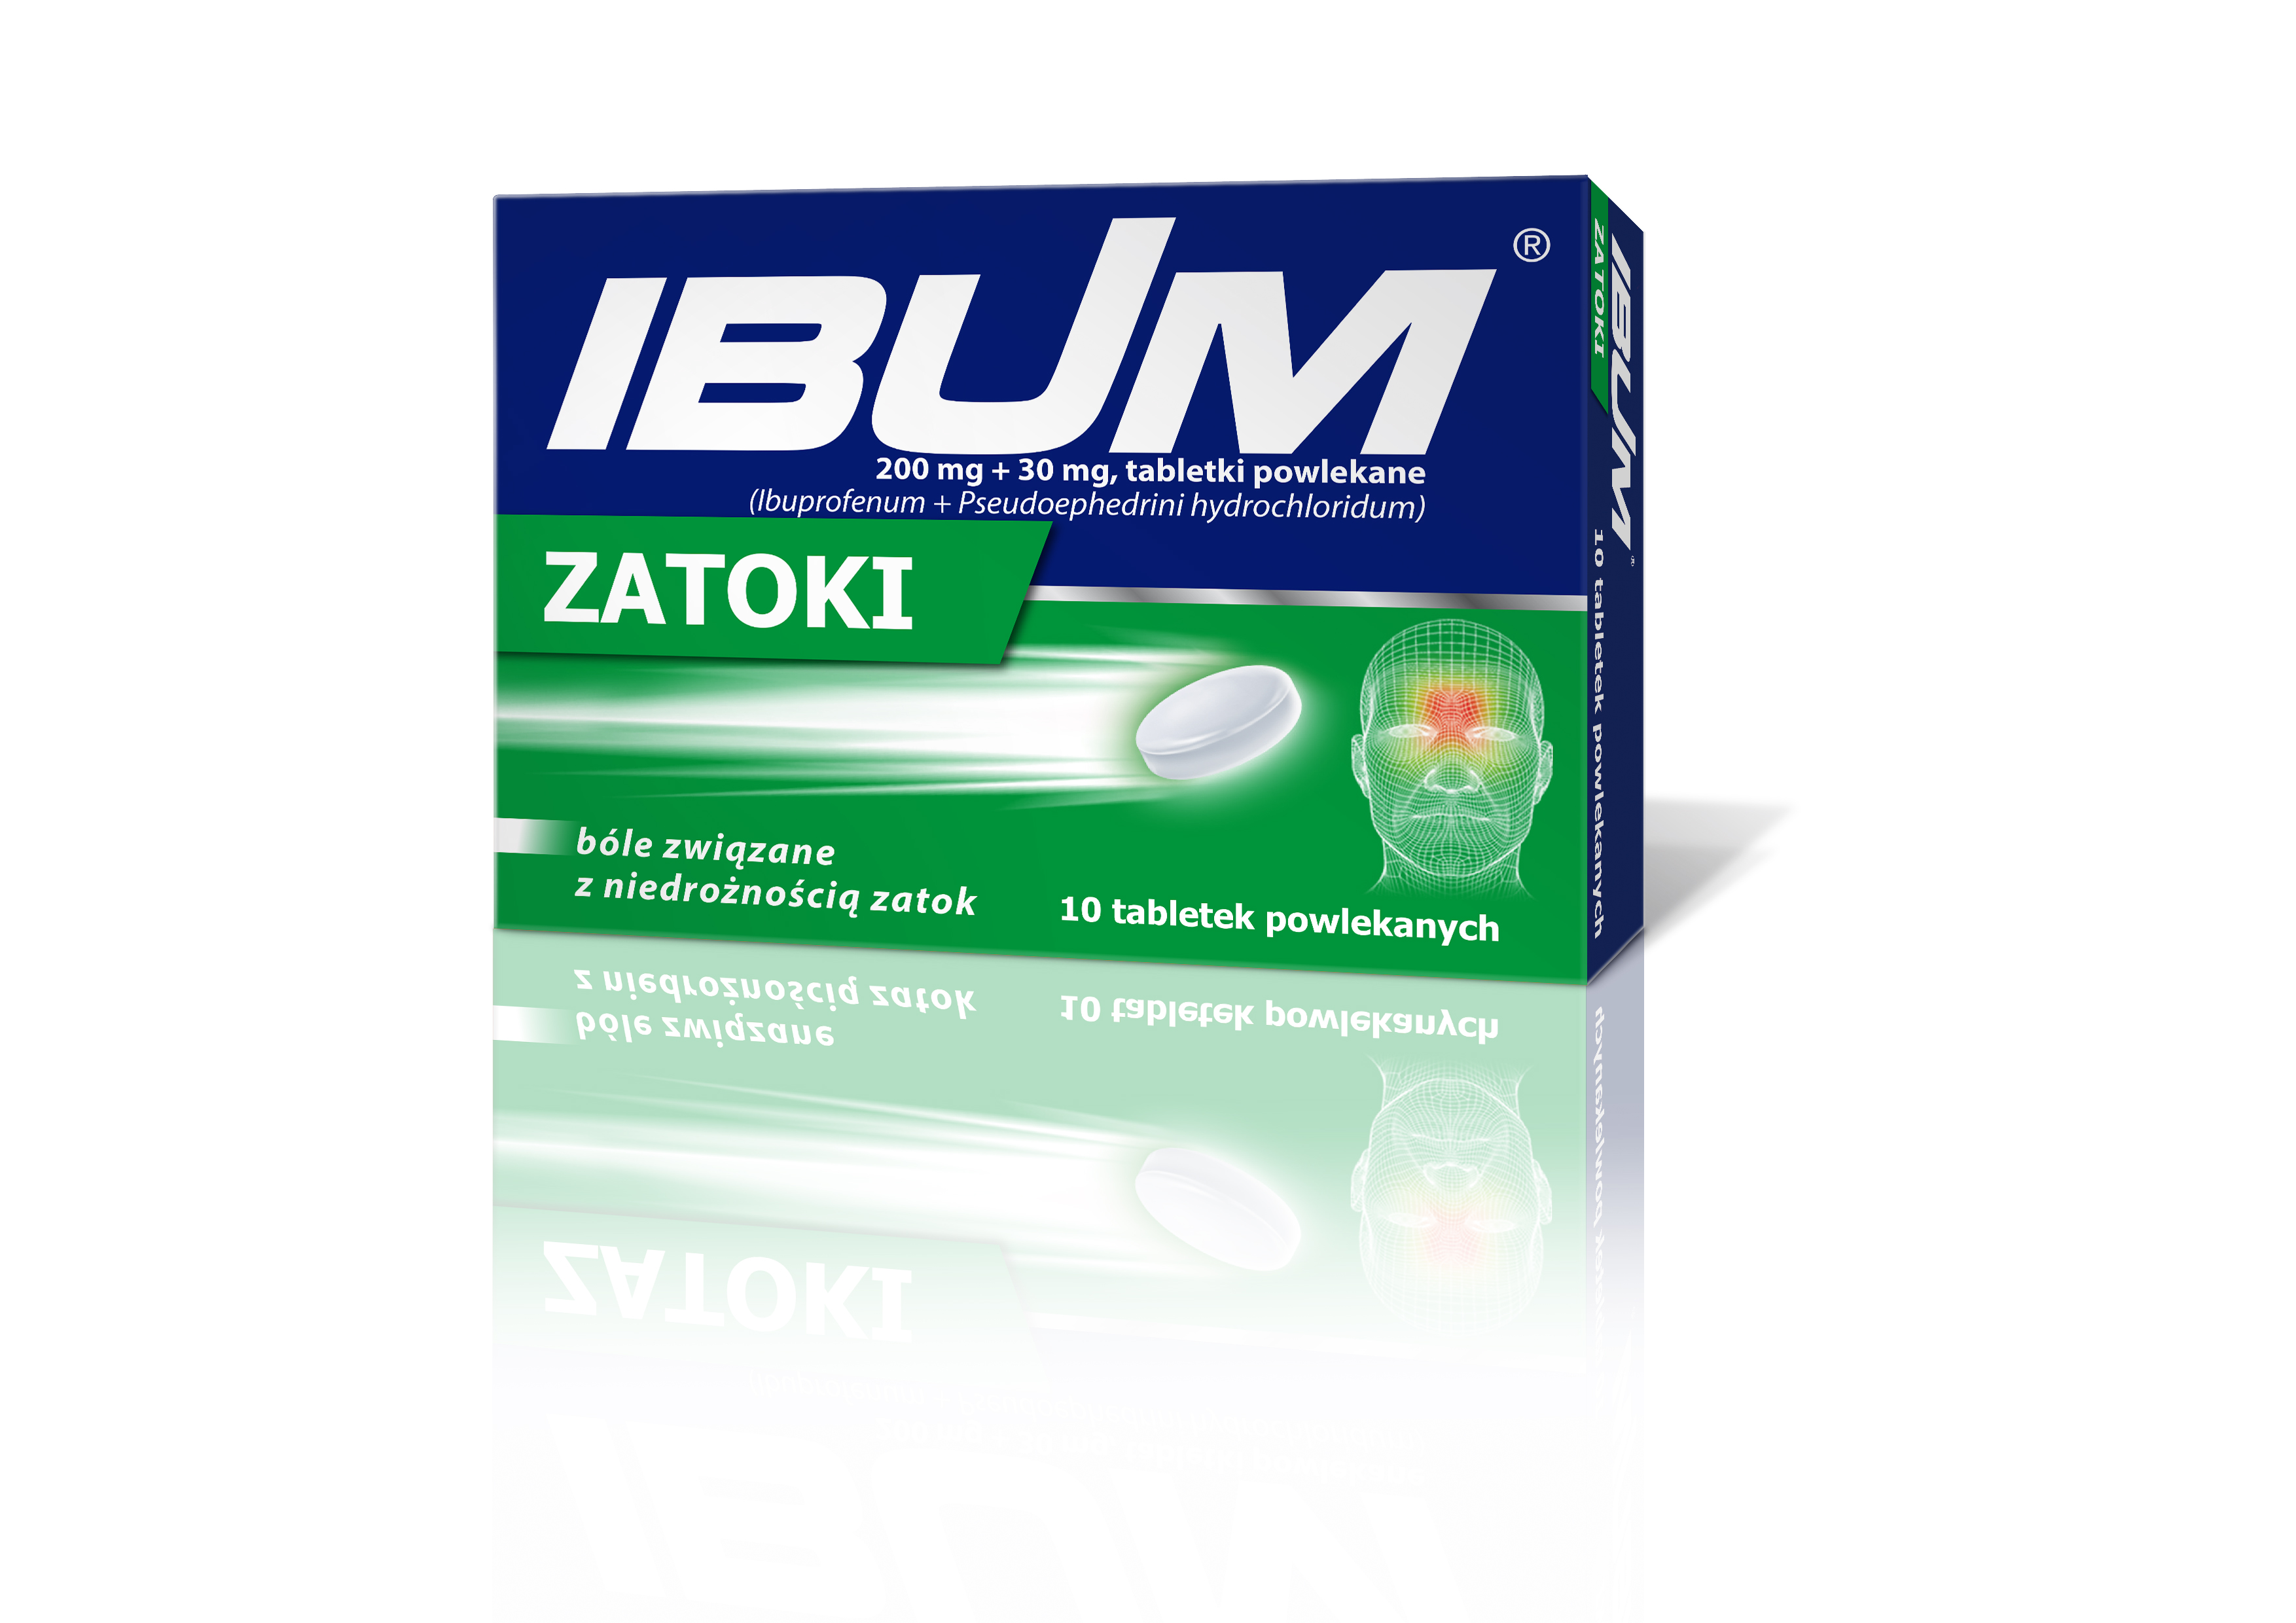 Ibuprofen + Pseudoephedrine 400/60mg, 200/30 mg